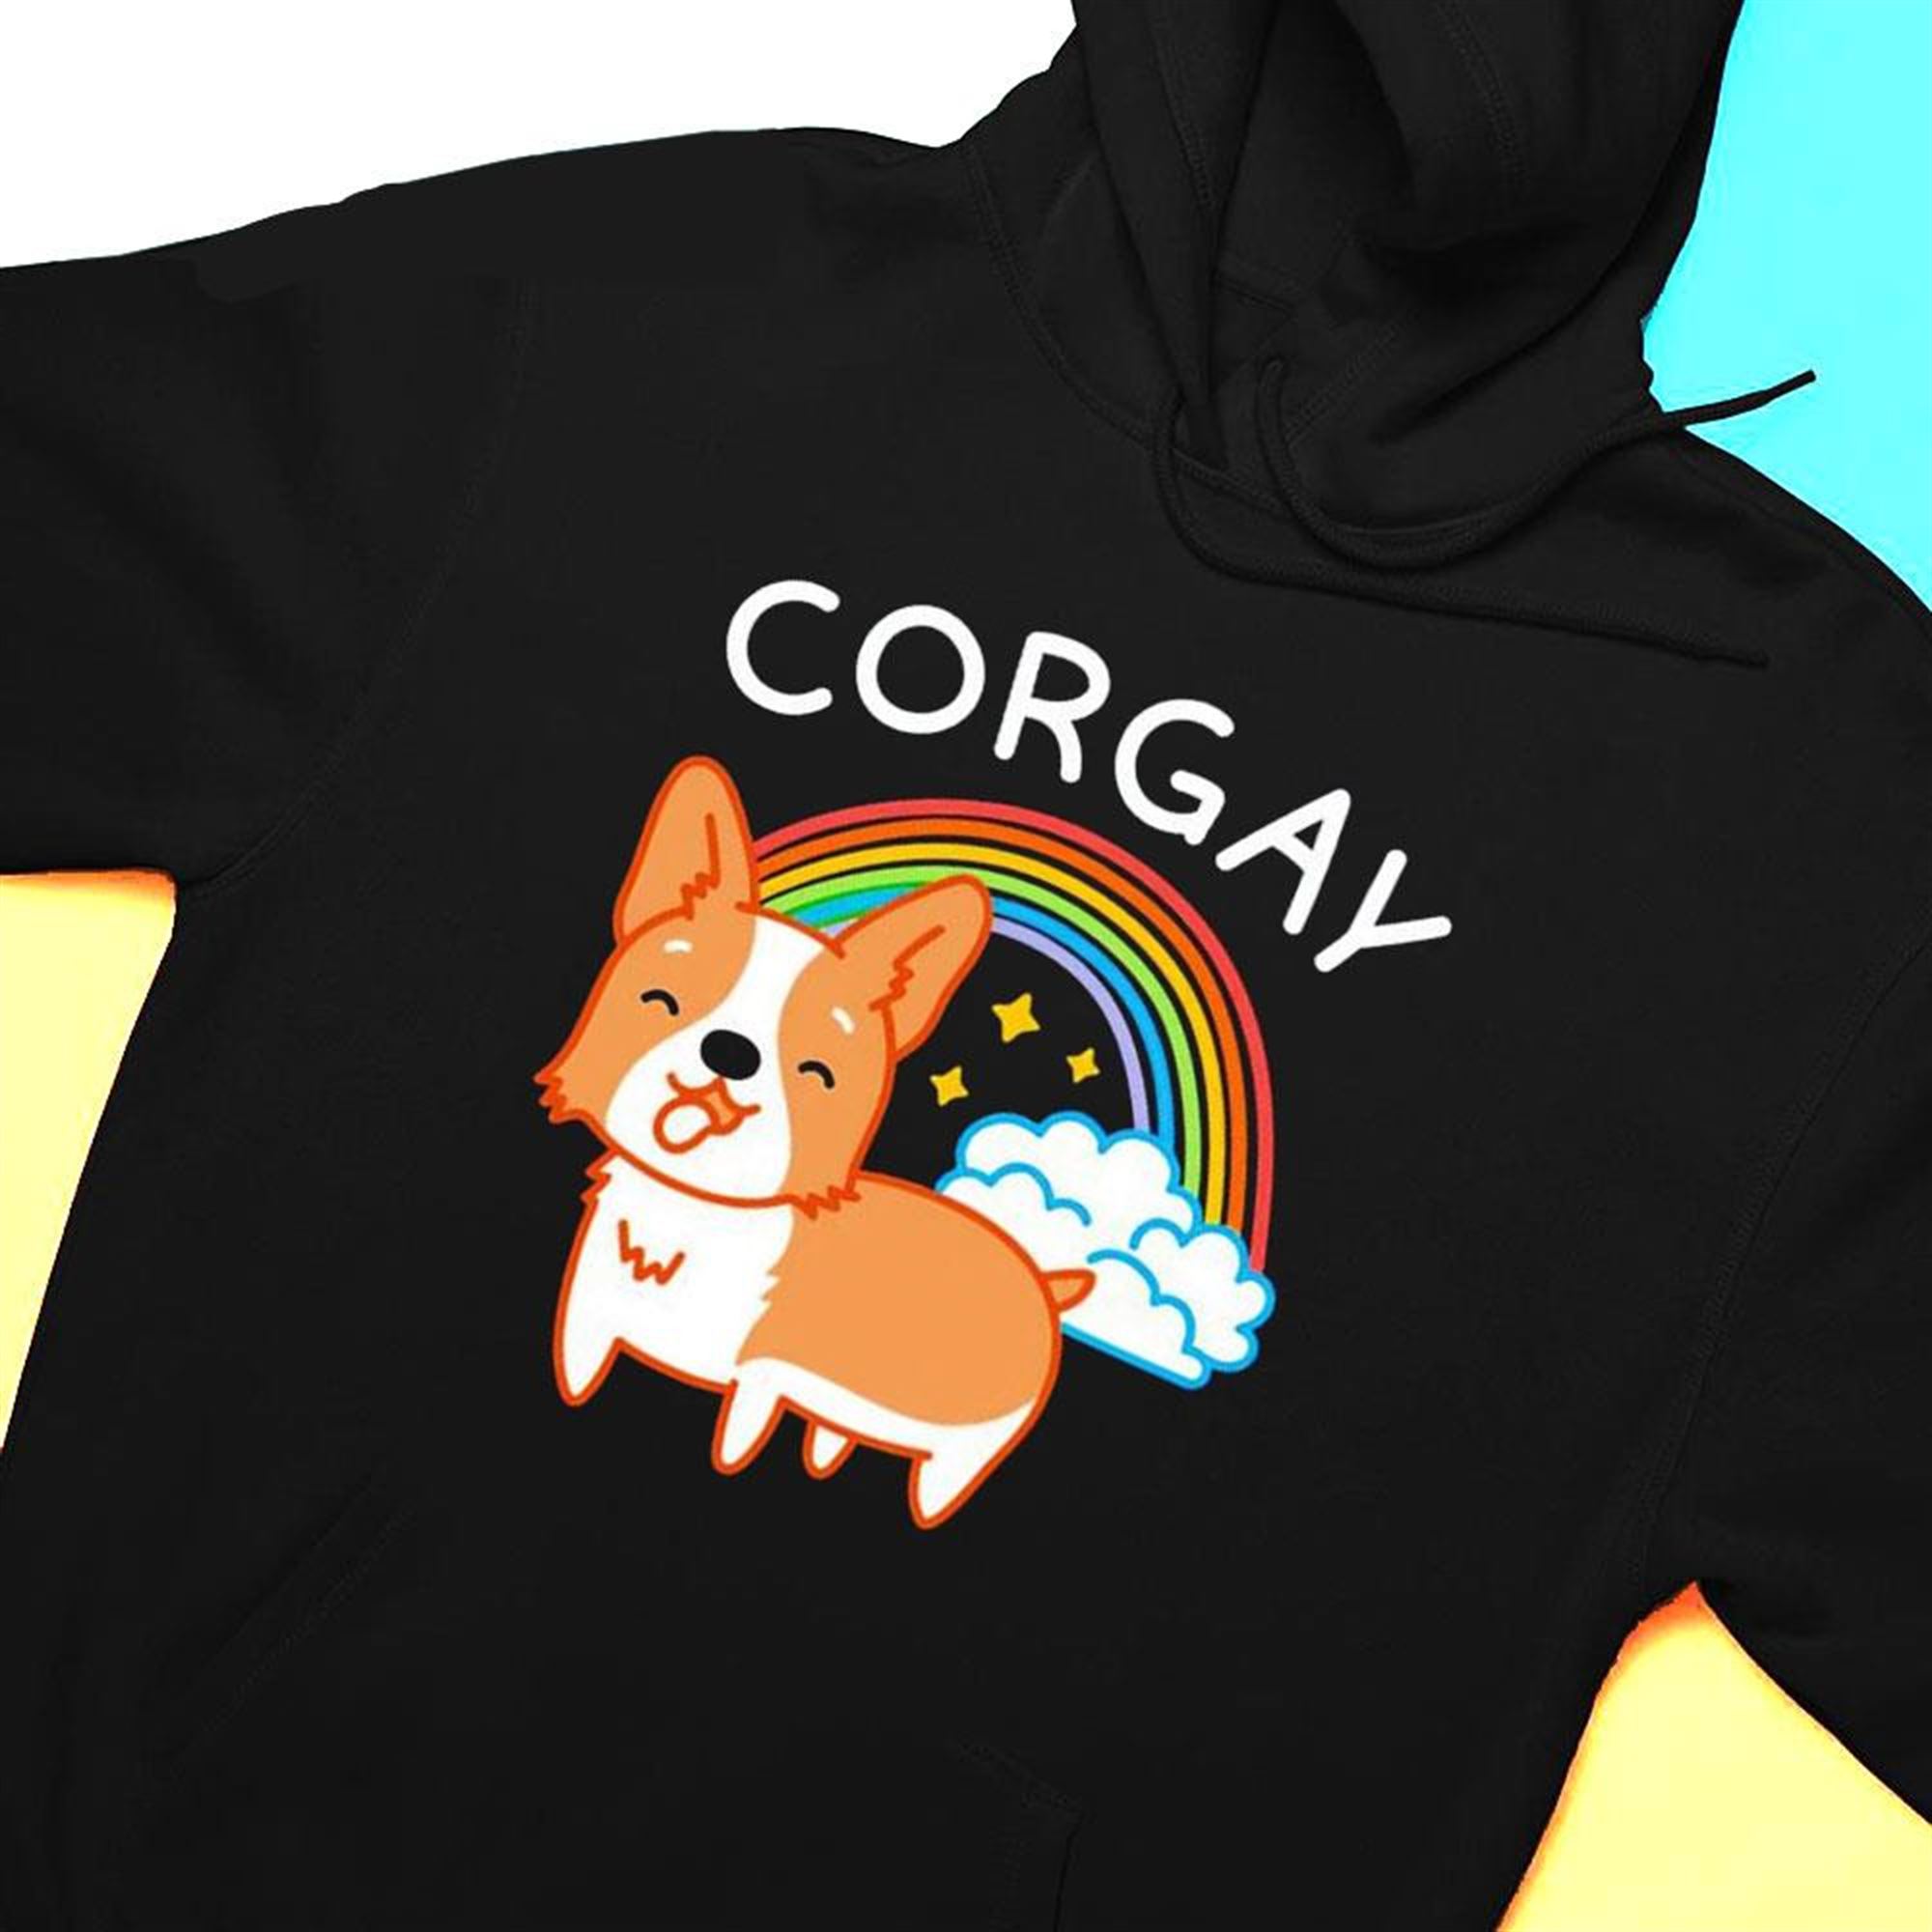 Corgay Pride Corgi Shirt